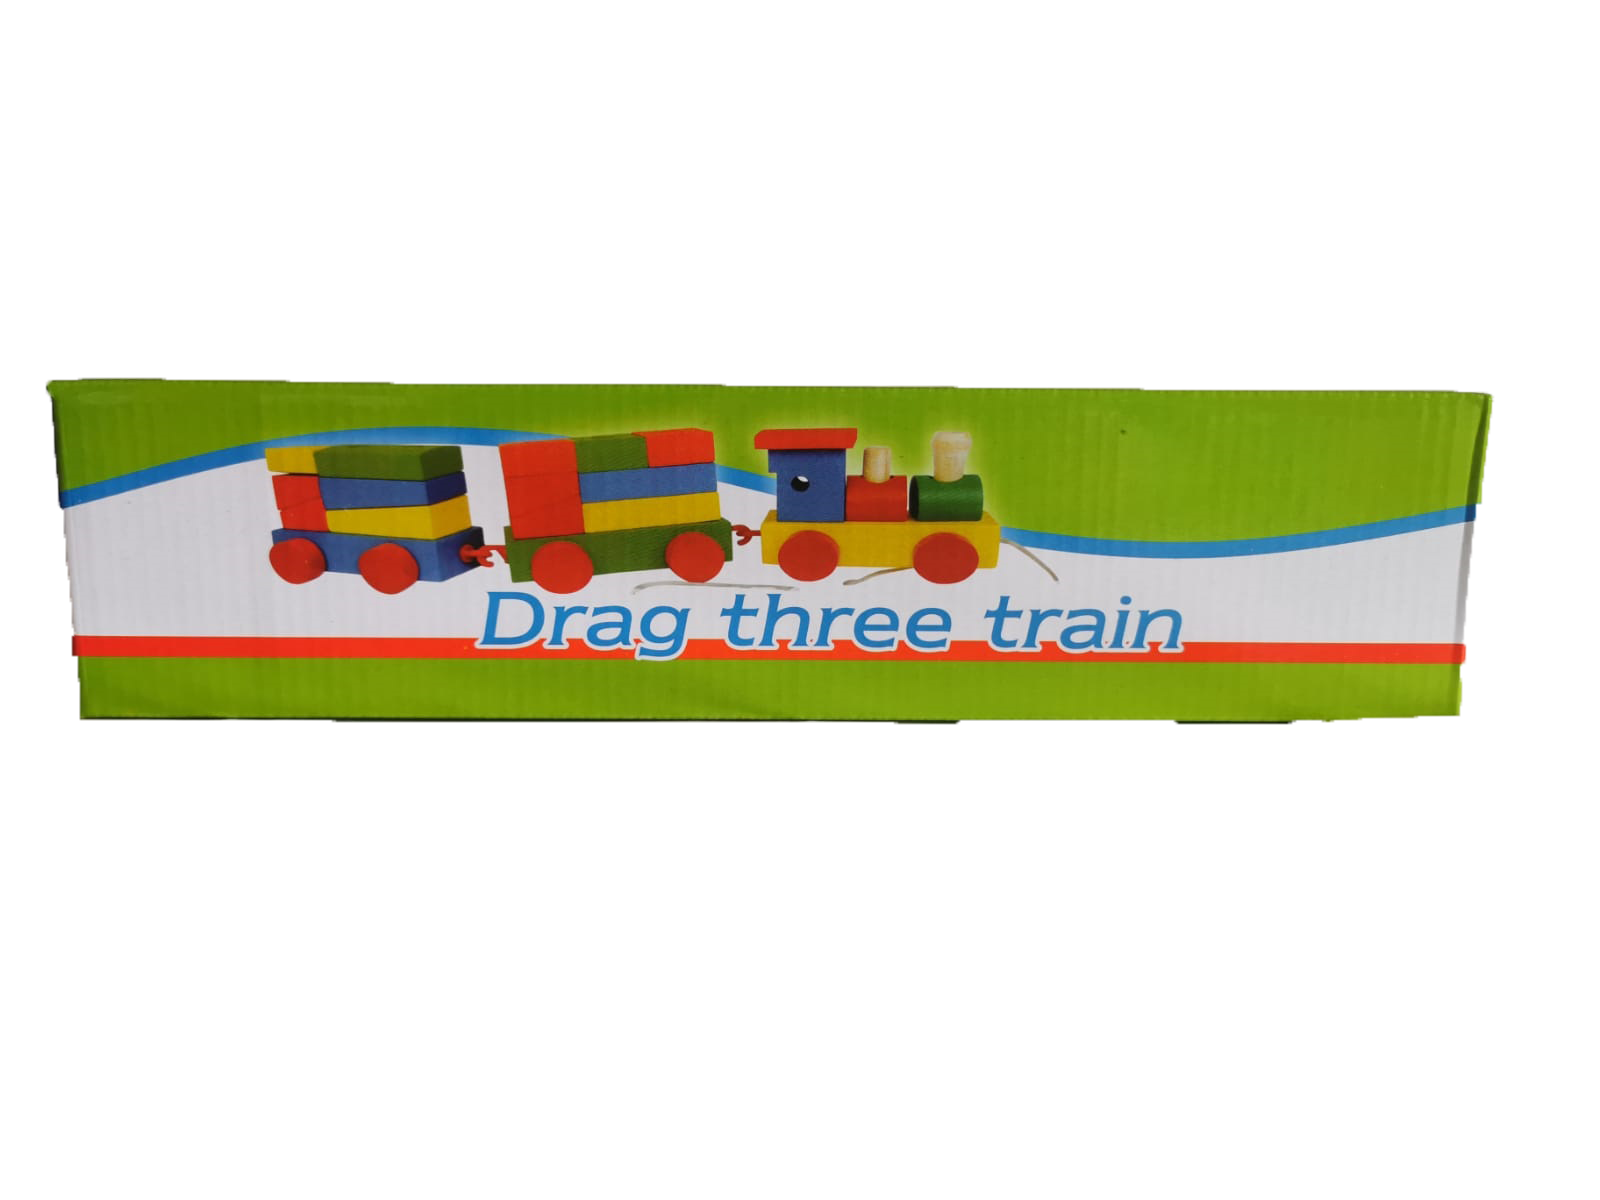 Trenulet din lemn cu forme geometrice este un trenulet de jucarie educational

Copii vor putea invata formele geometrice si culorile.

Trenuletul este din lemn, cu vopsele pe baza de apa(non toxice)

Copii vor putea invata cifrele intr-un mod placut formele geometrice asezandu-le unele peste altele si insirand vagoanele.

Dimensiuni: 85 cm x 6.5 cm
